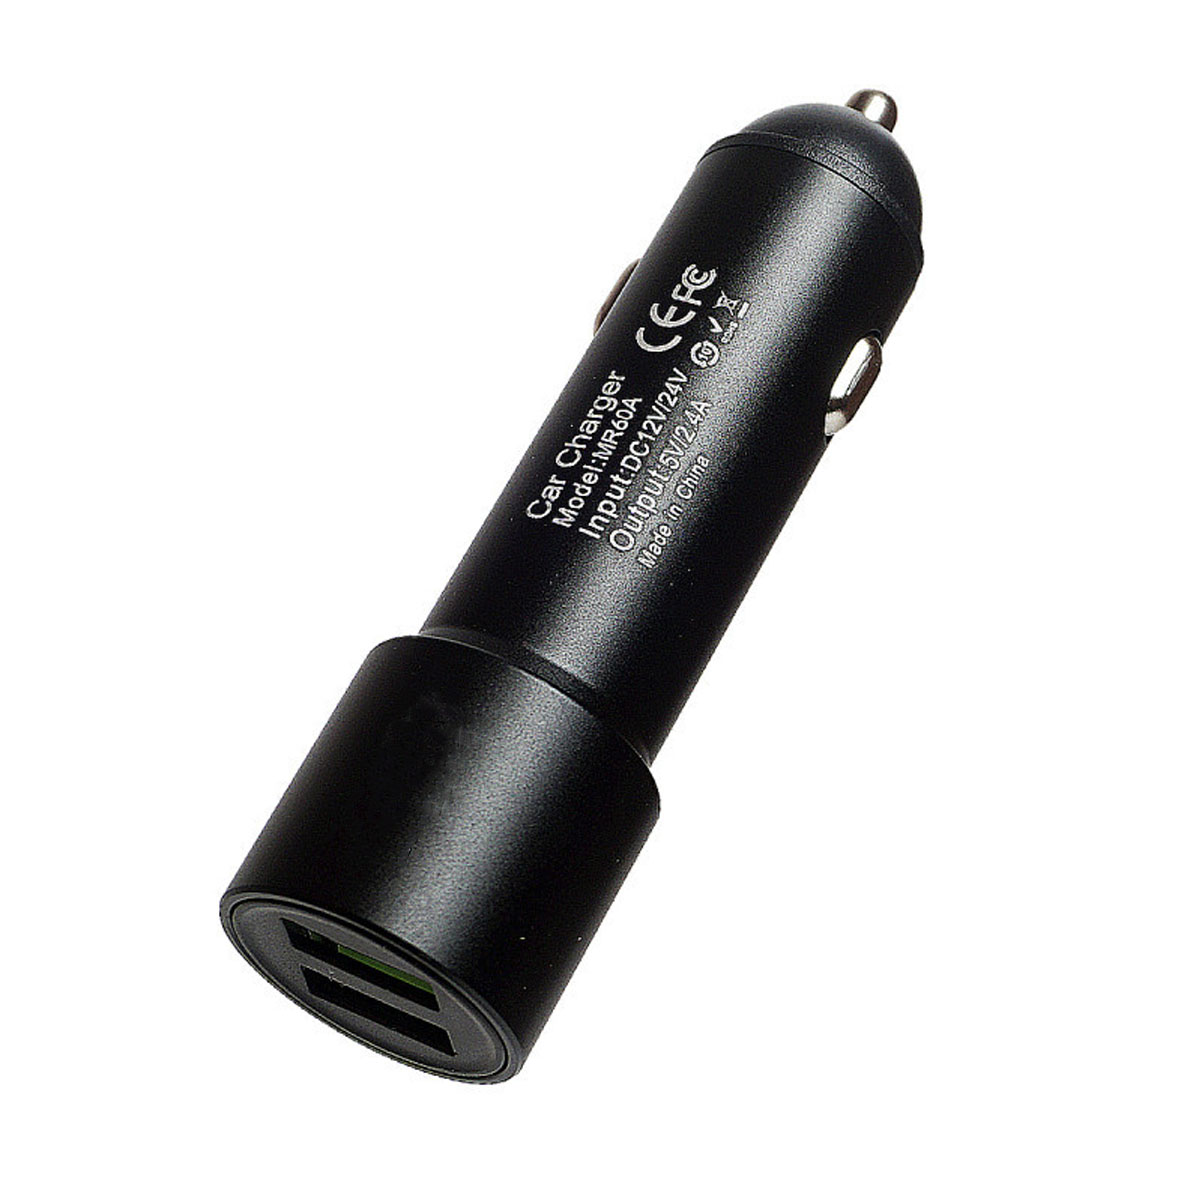 АЗУ (Автомобильное зарядное устройство) CARLIVE MR60A, 2.4A, 2 USB, алюминиевый корпус, цвет черный